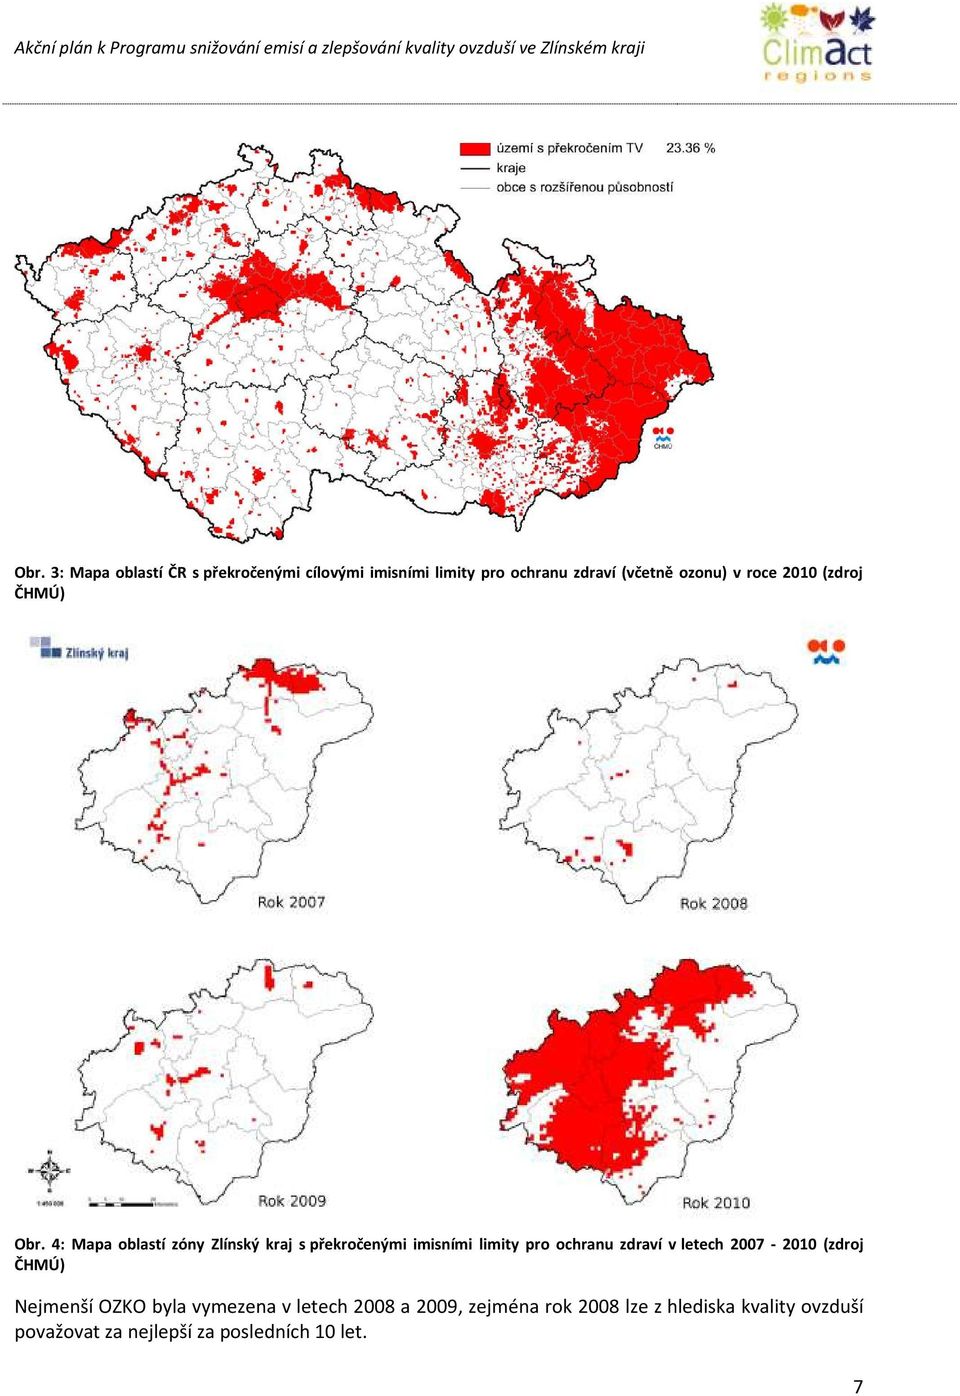 4: Mapa oblastí zóny Zlínský kraj s překročenými imisními limity pro ochranu zdraví v letech